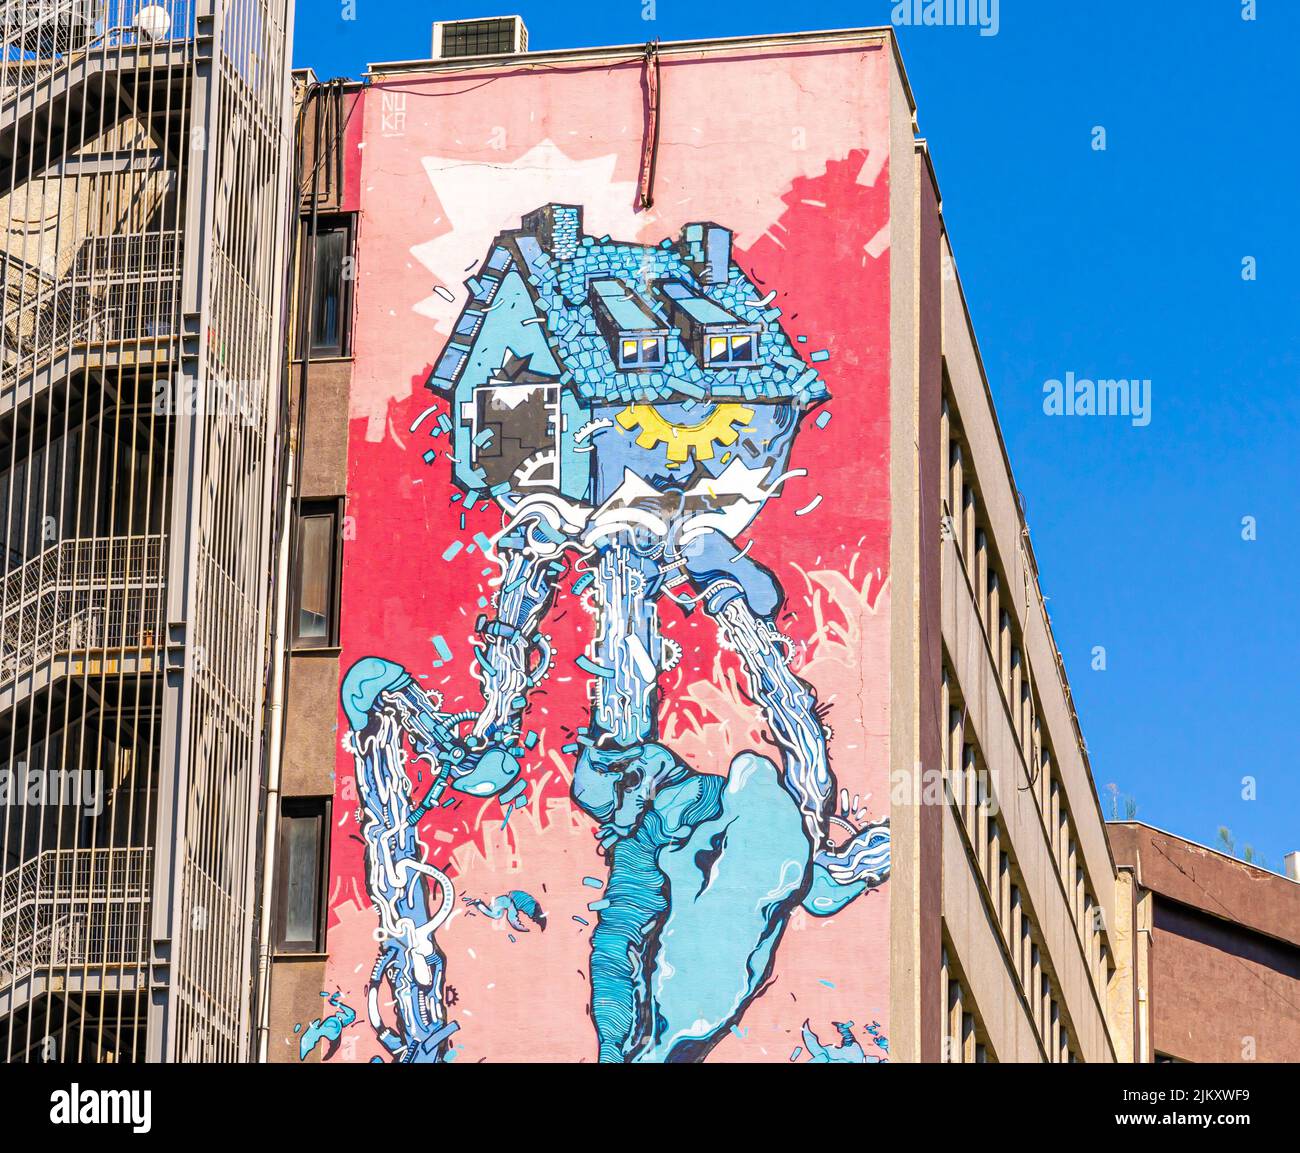 Arte callejero, mural de Nuka que representa una casa mecánica, distrito de Kadiköy de Estambul, Turquía Foto de stock